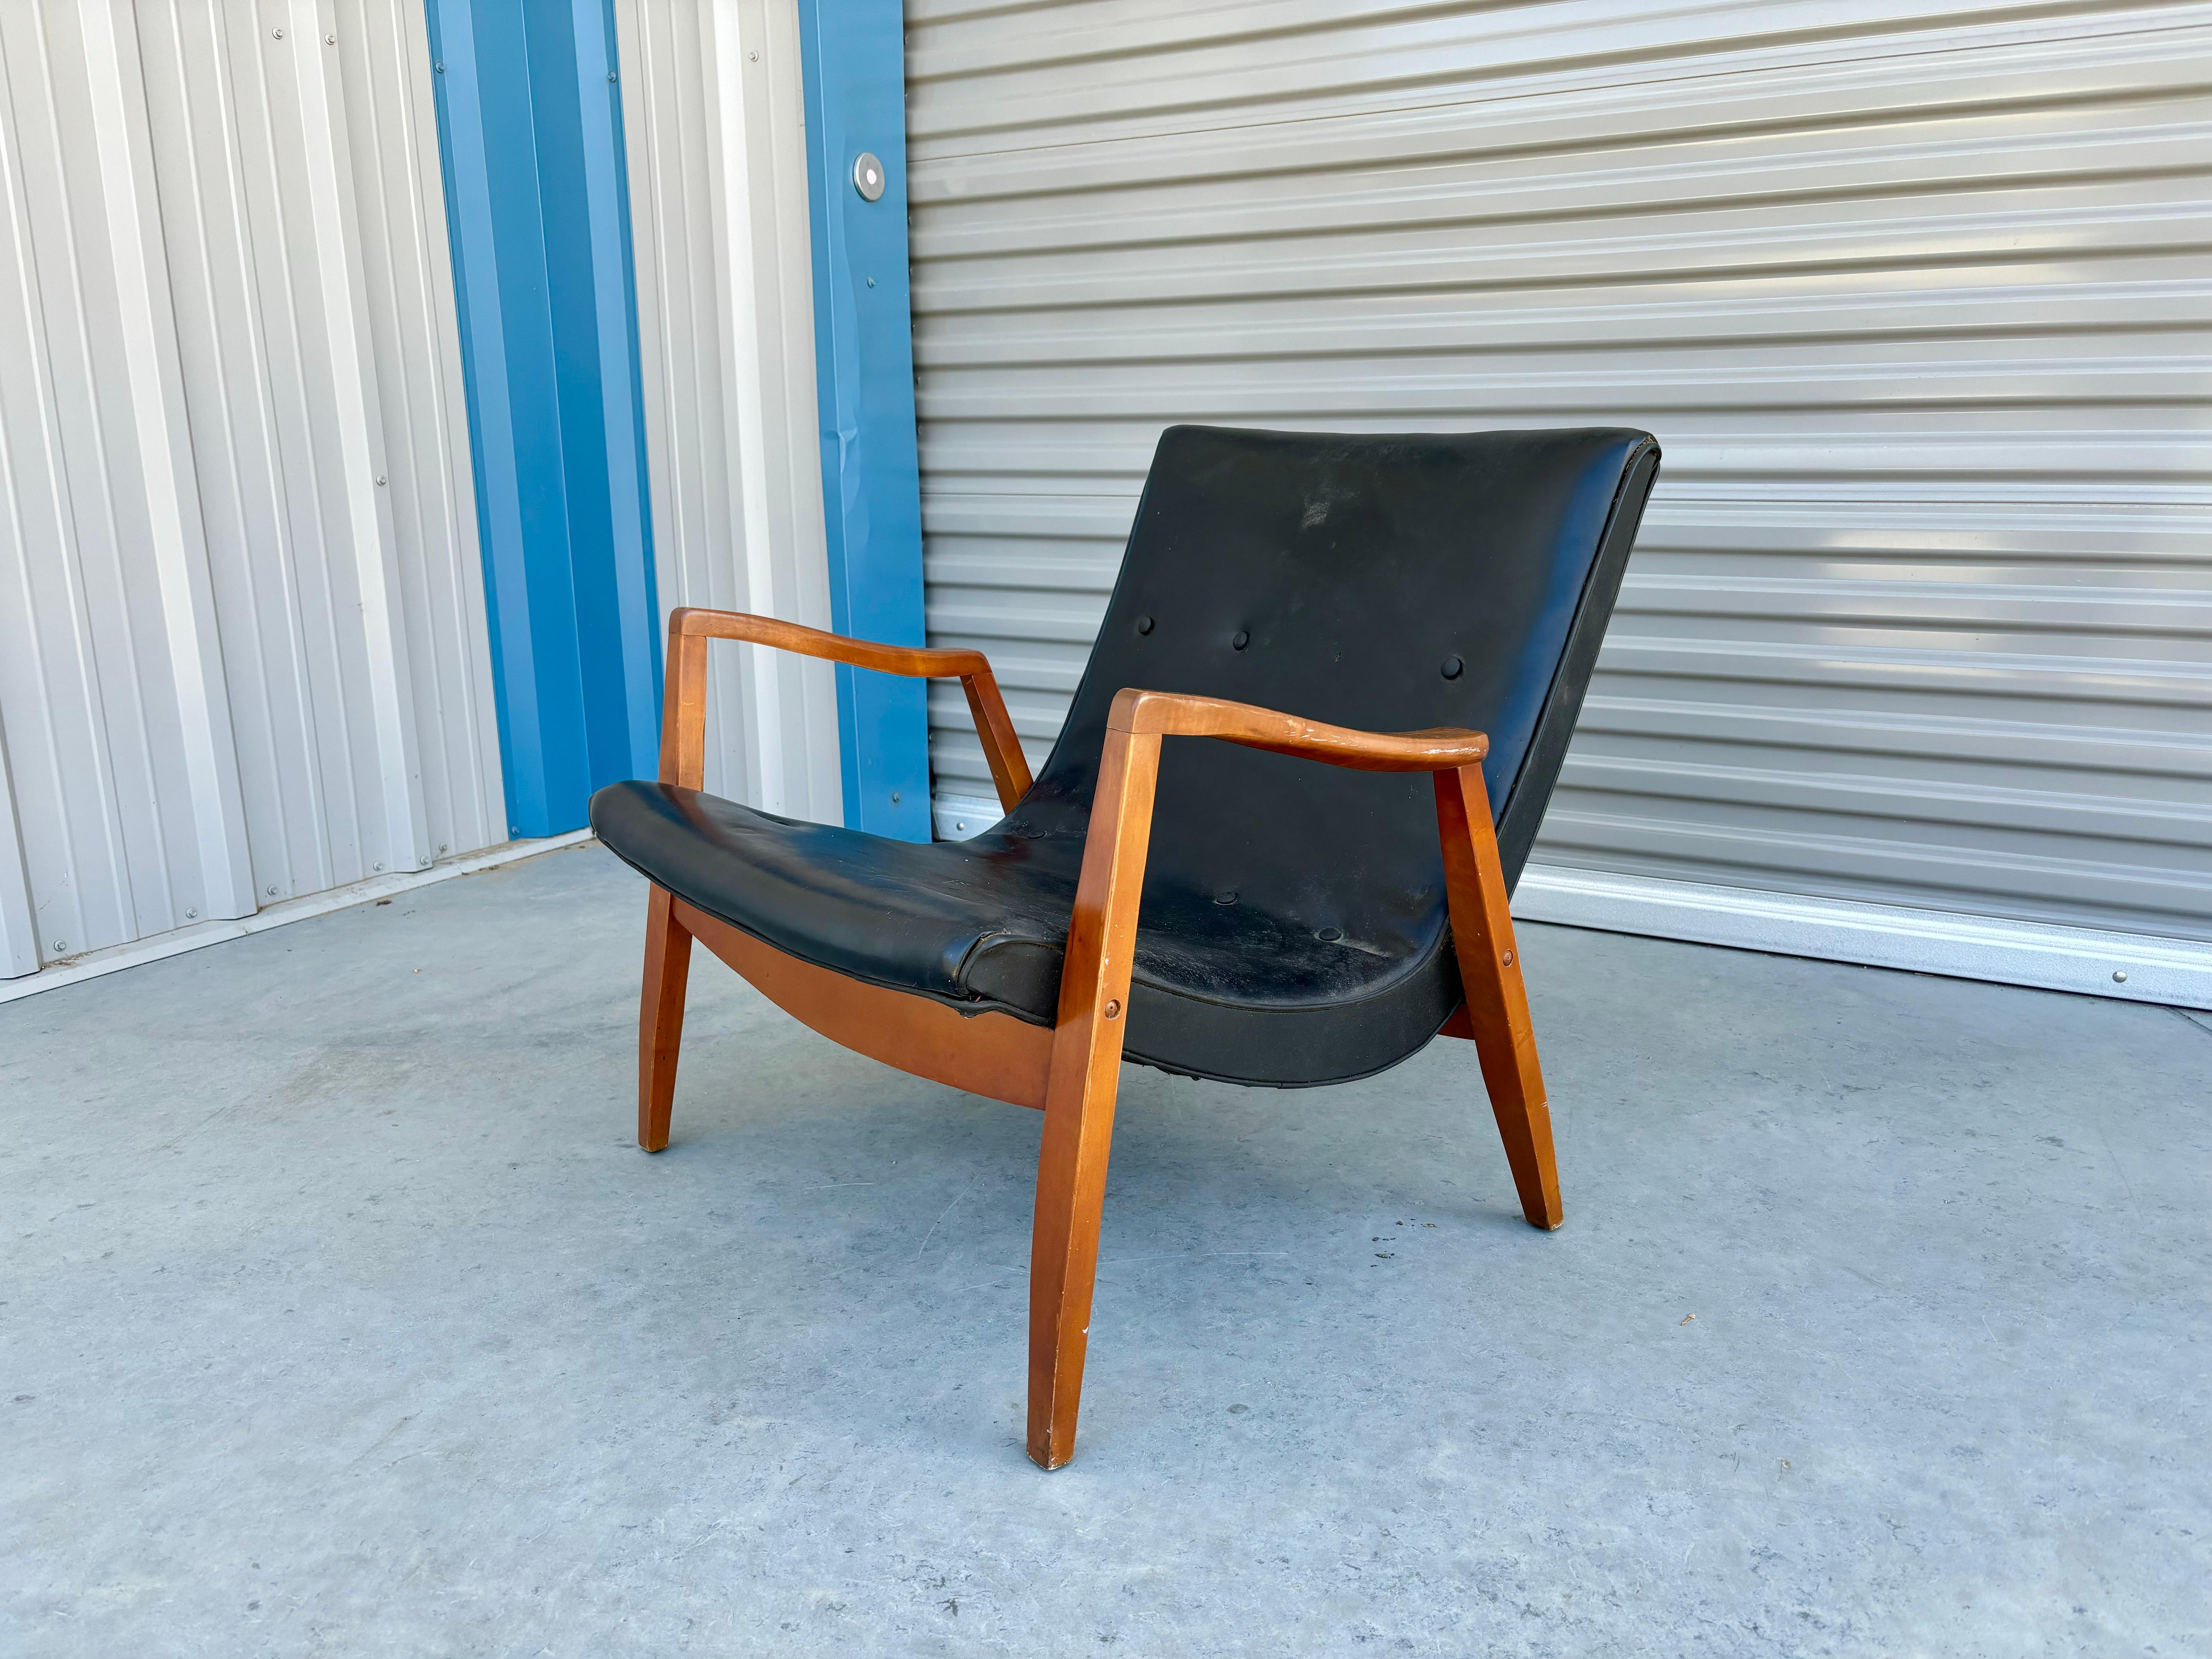 Cette exquise chaise longue scoop du milieu du siècle est un véritable chef-d'œuvre du design mobilier, conçu et fabriqué par Milo Baughman aux États-Unis dans les années 1960. La chaise est dotée d'un revêtement en cuir noir élégant et sophistiqué